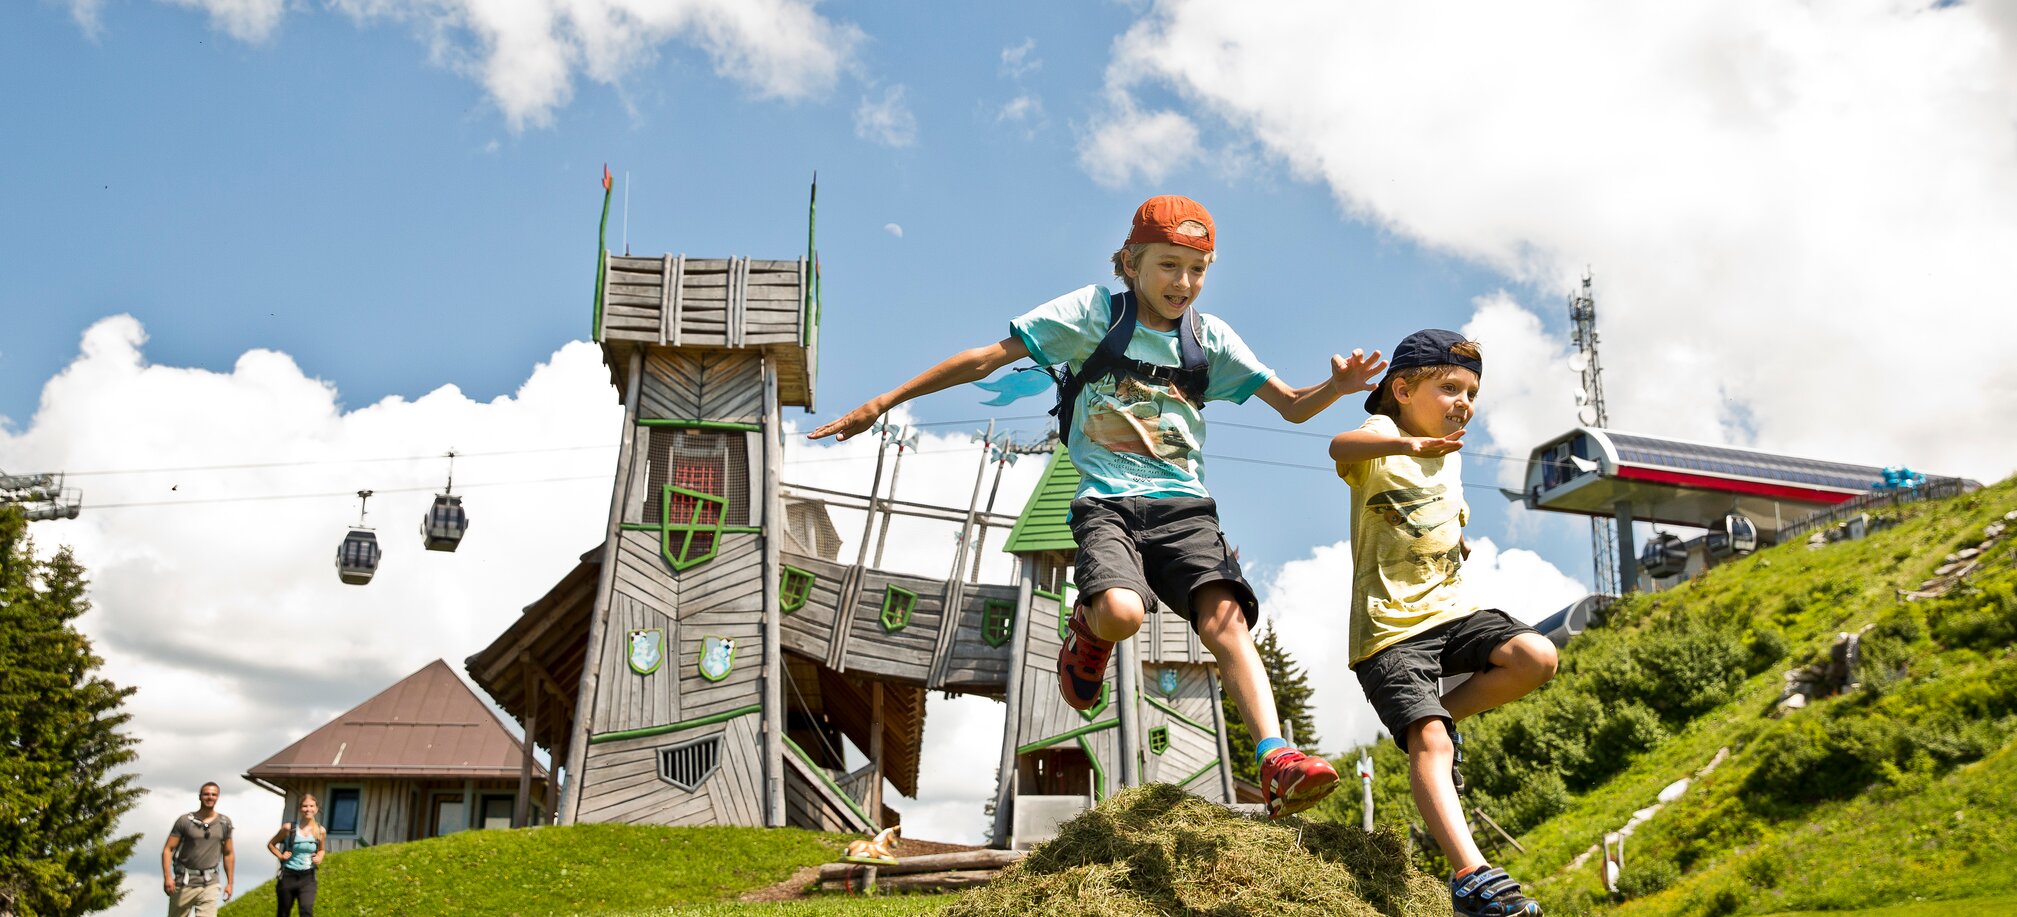 Zwei Kinder springen über einen kleinen Grashügel und im Hintergrund ist ein Spielplatz zu sehen, der wie eine Burg aussieht | © sanktjohann.com, Mirja Geh